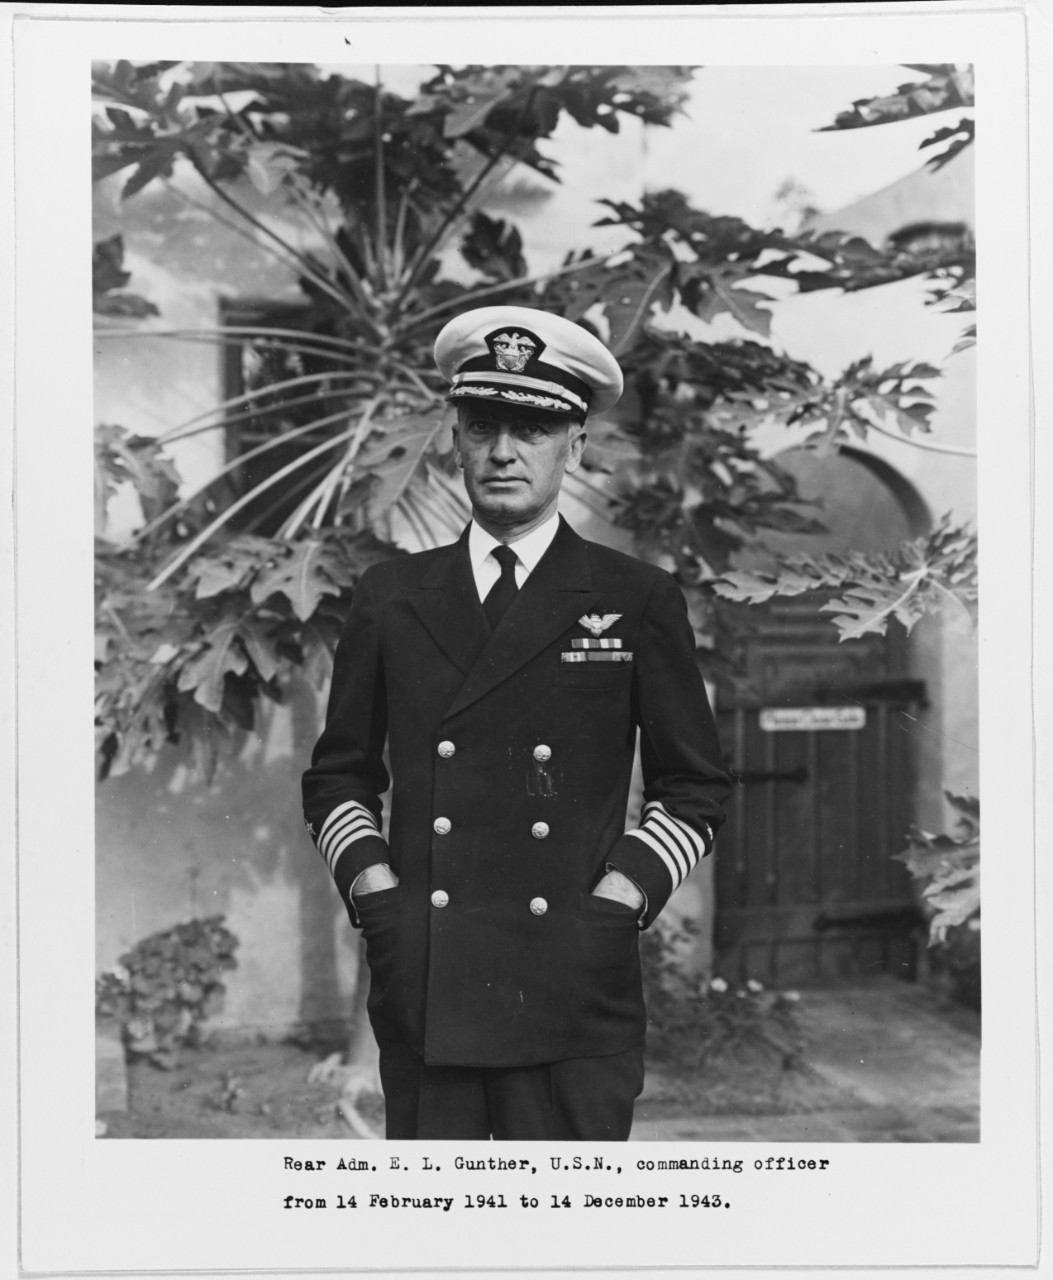 Captain Ernest L. Gunther, USN